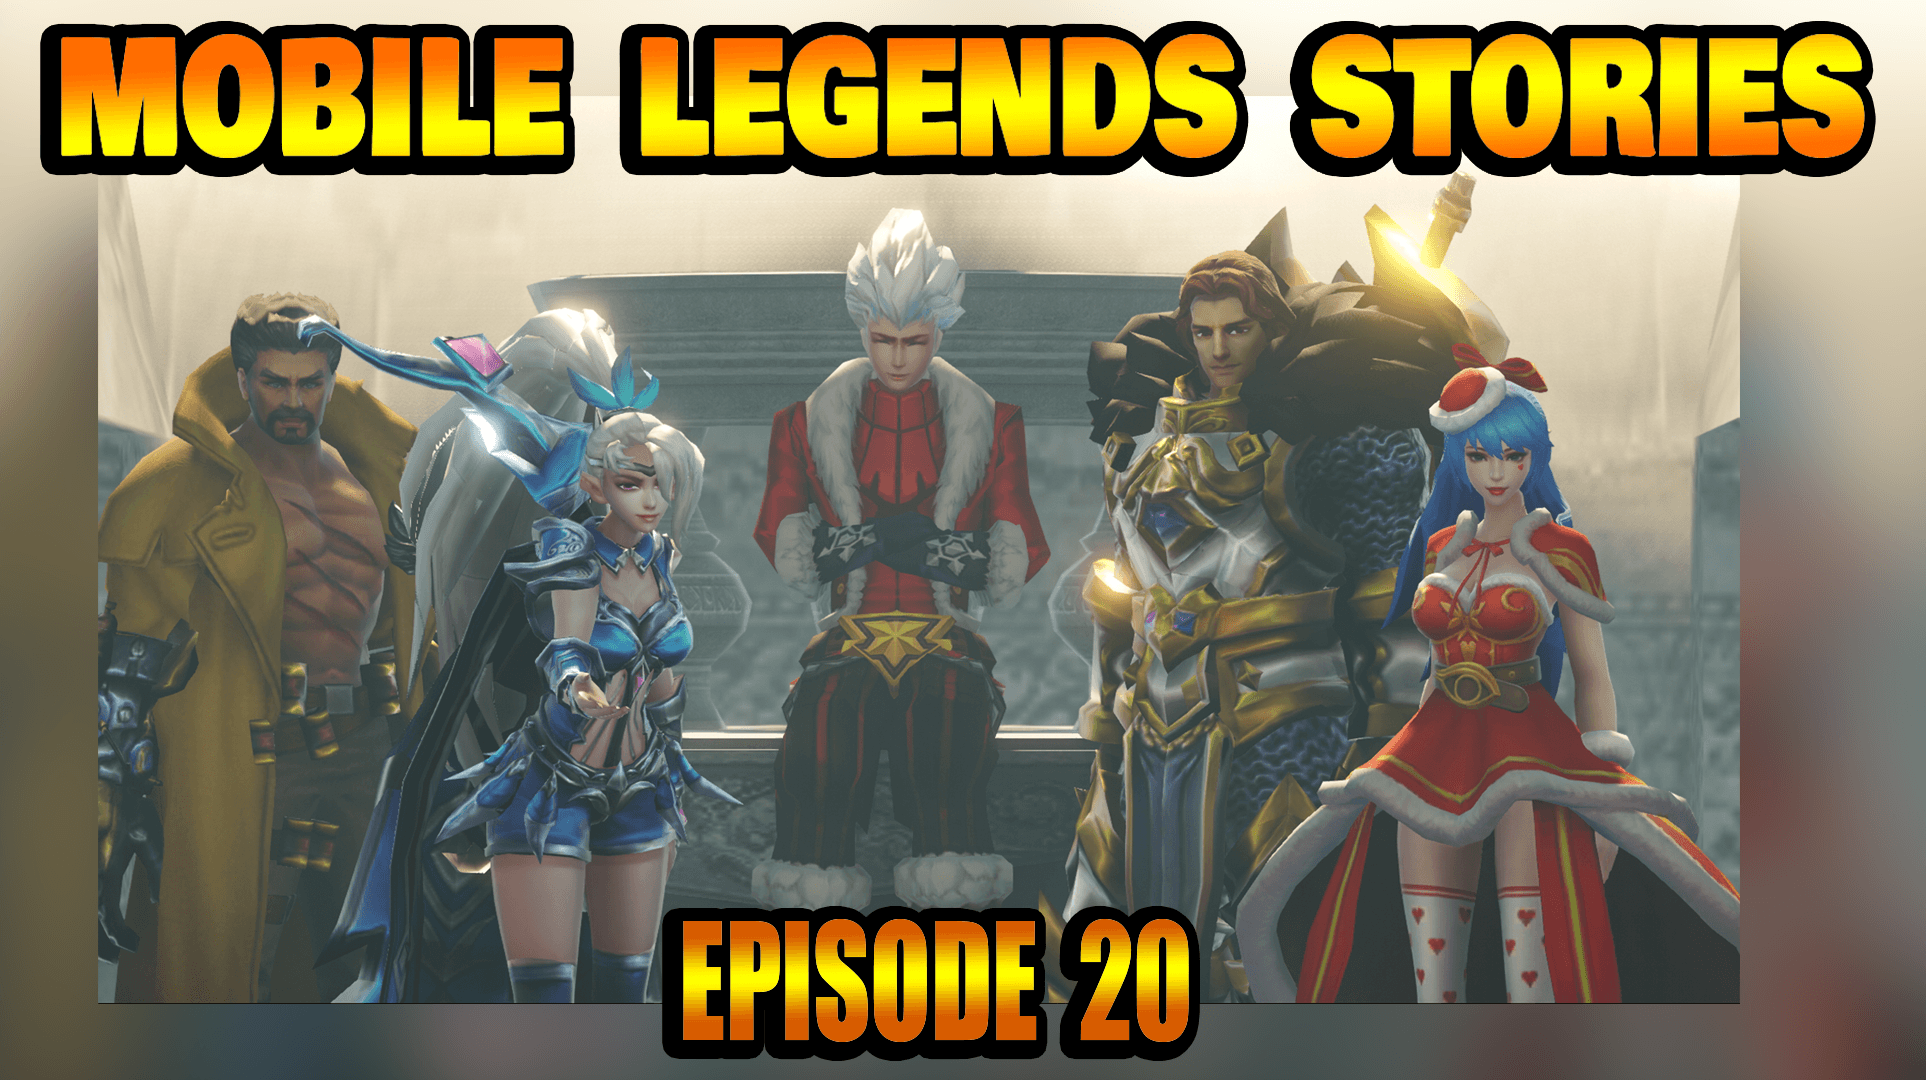 Mobile Legends Stories Episode 20